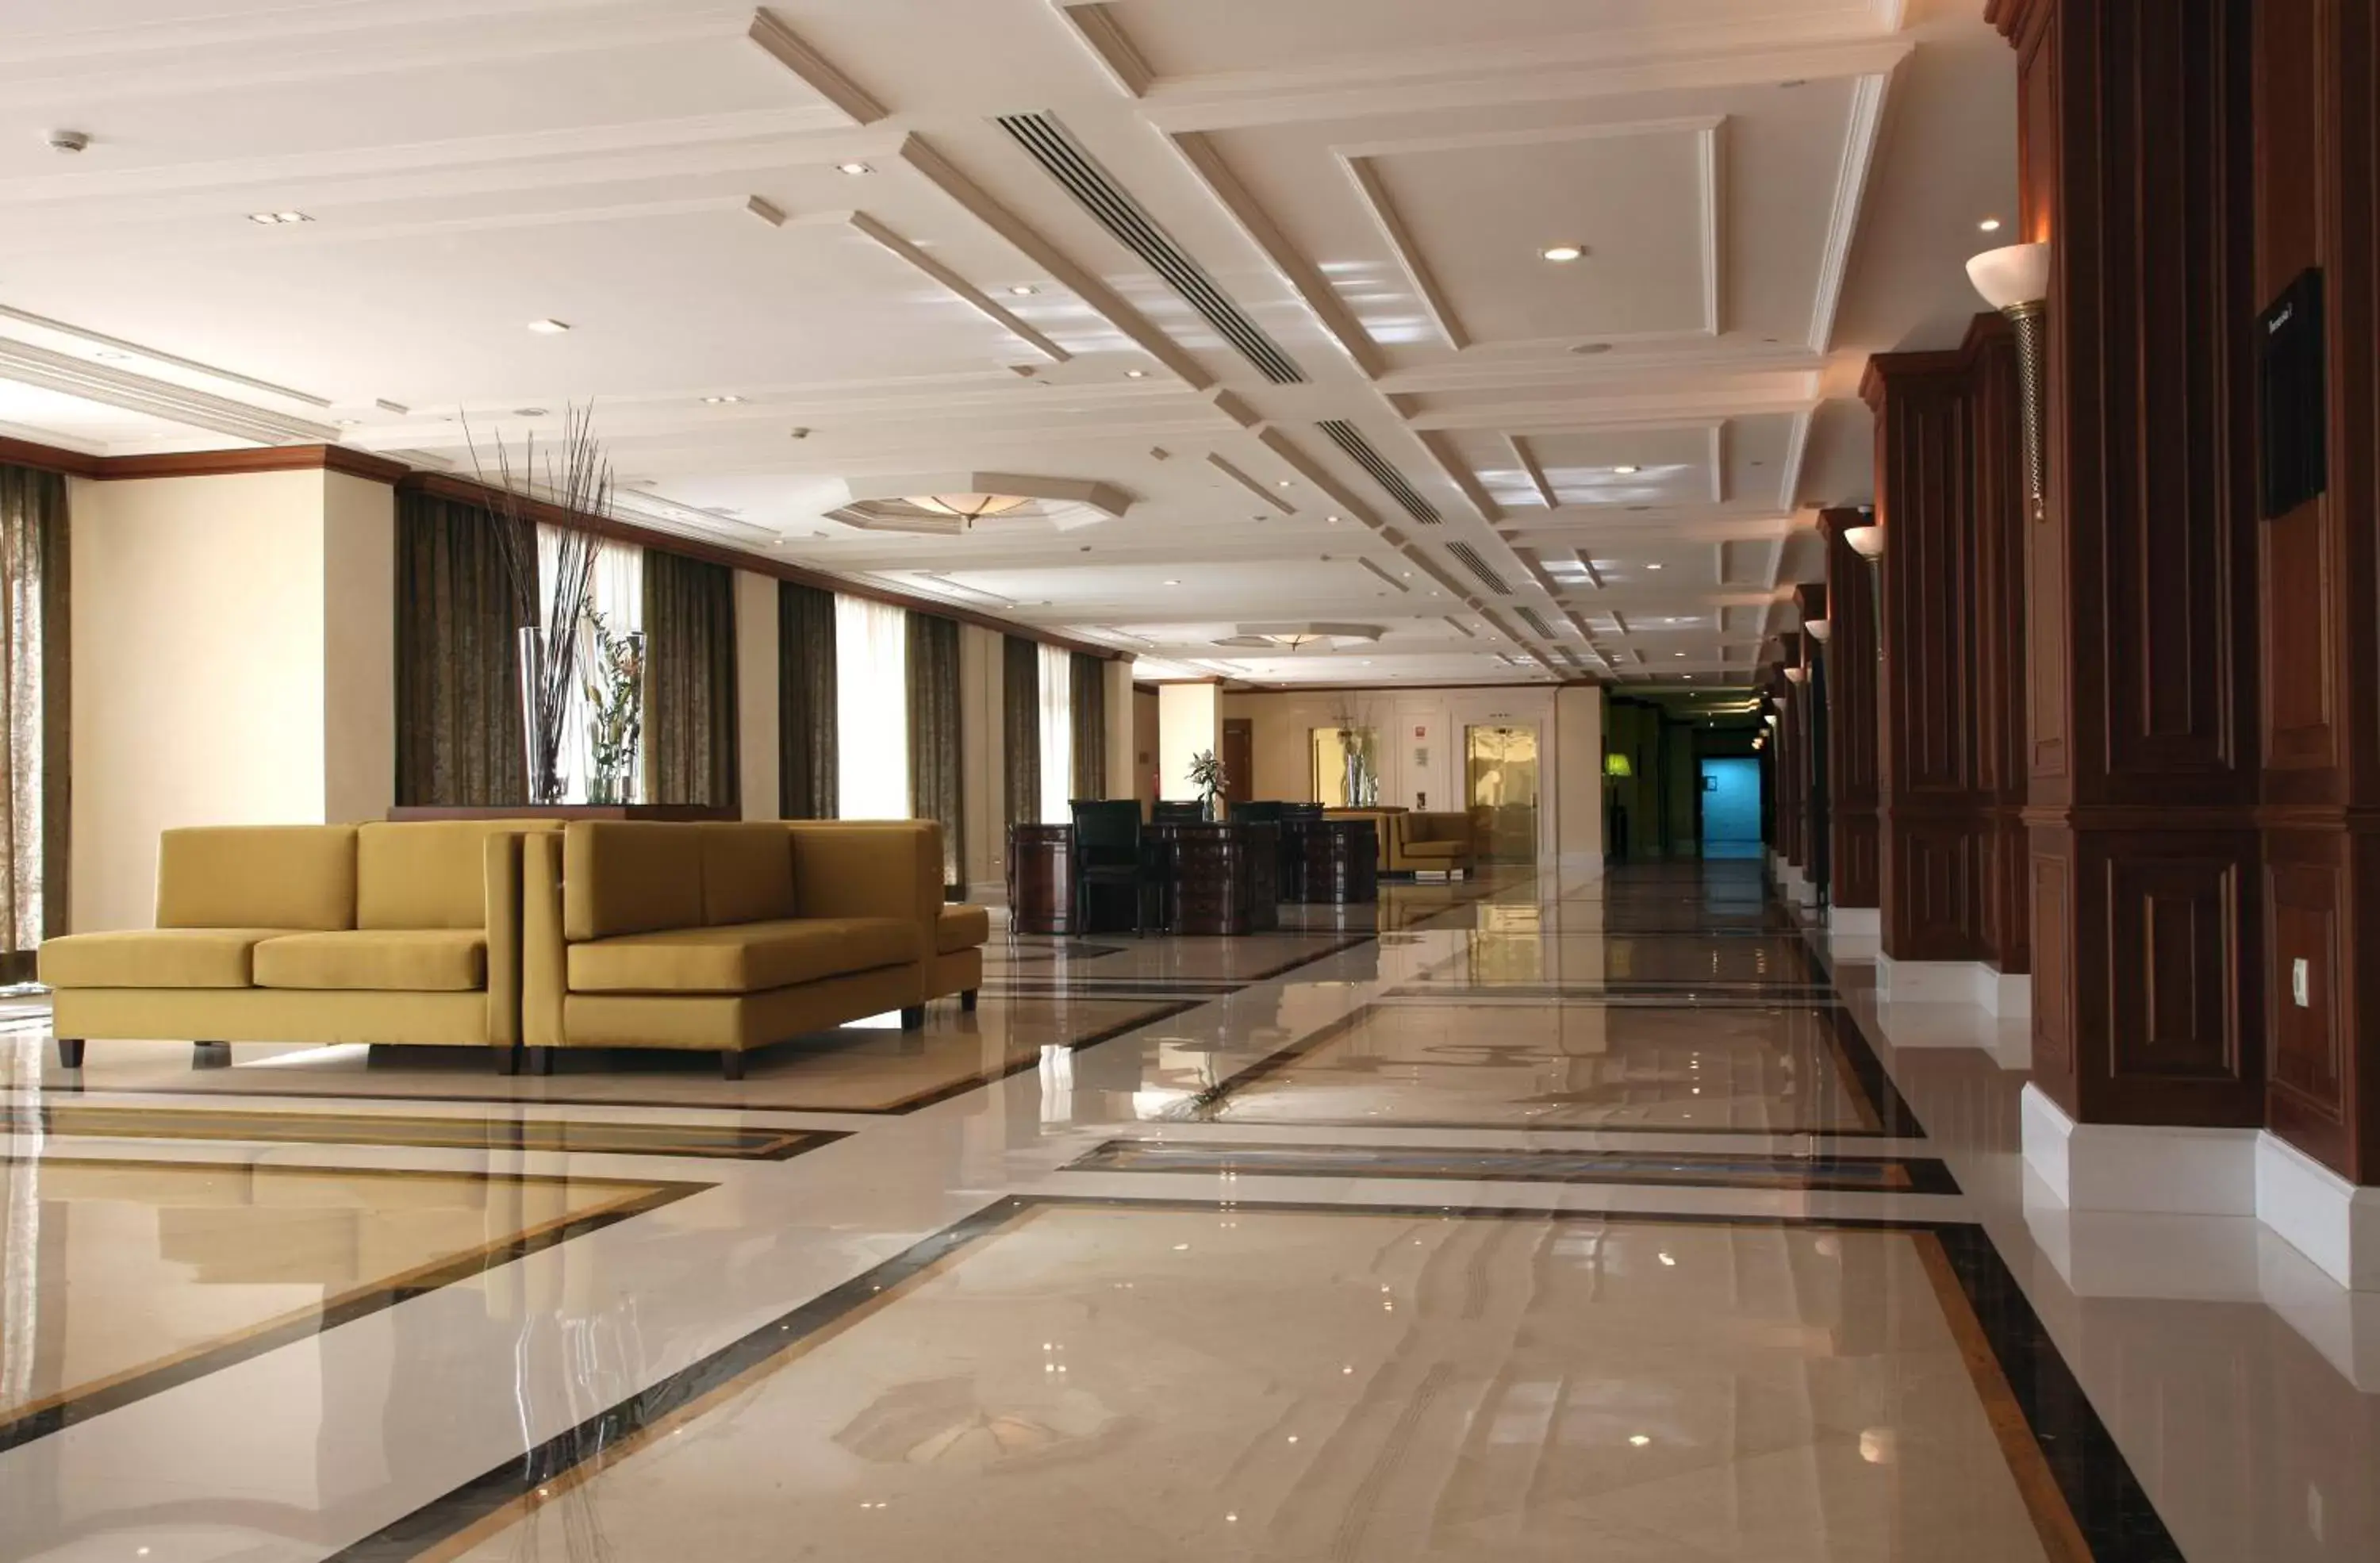 Banquet/Function facilities, Lobby/Reception in Eurostars Palacio Buenavista